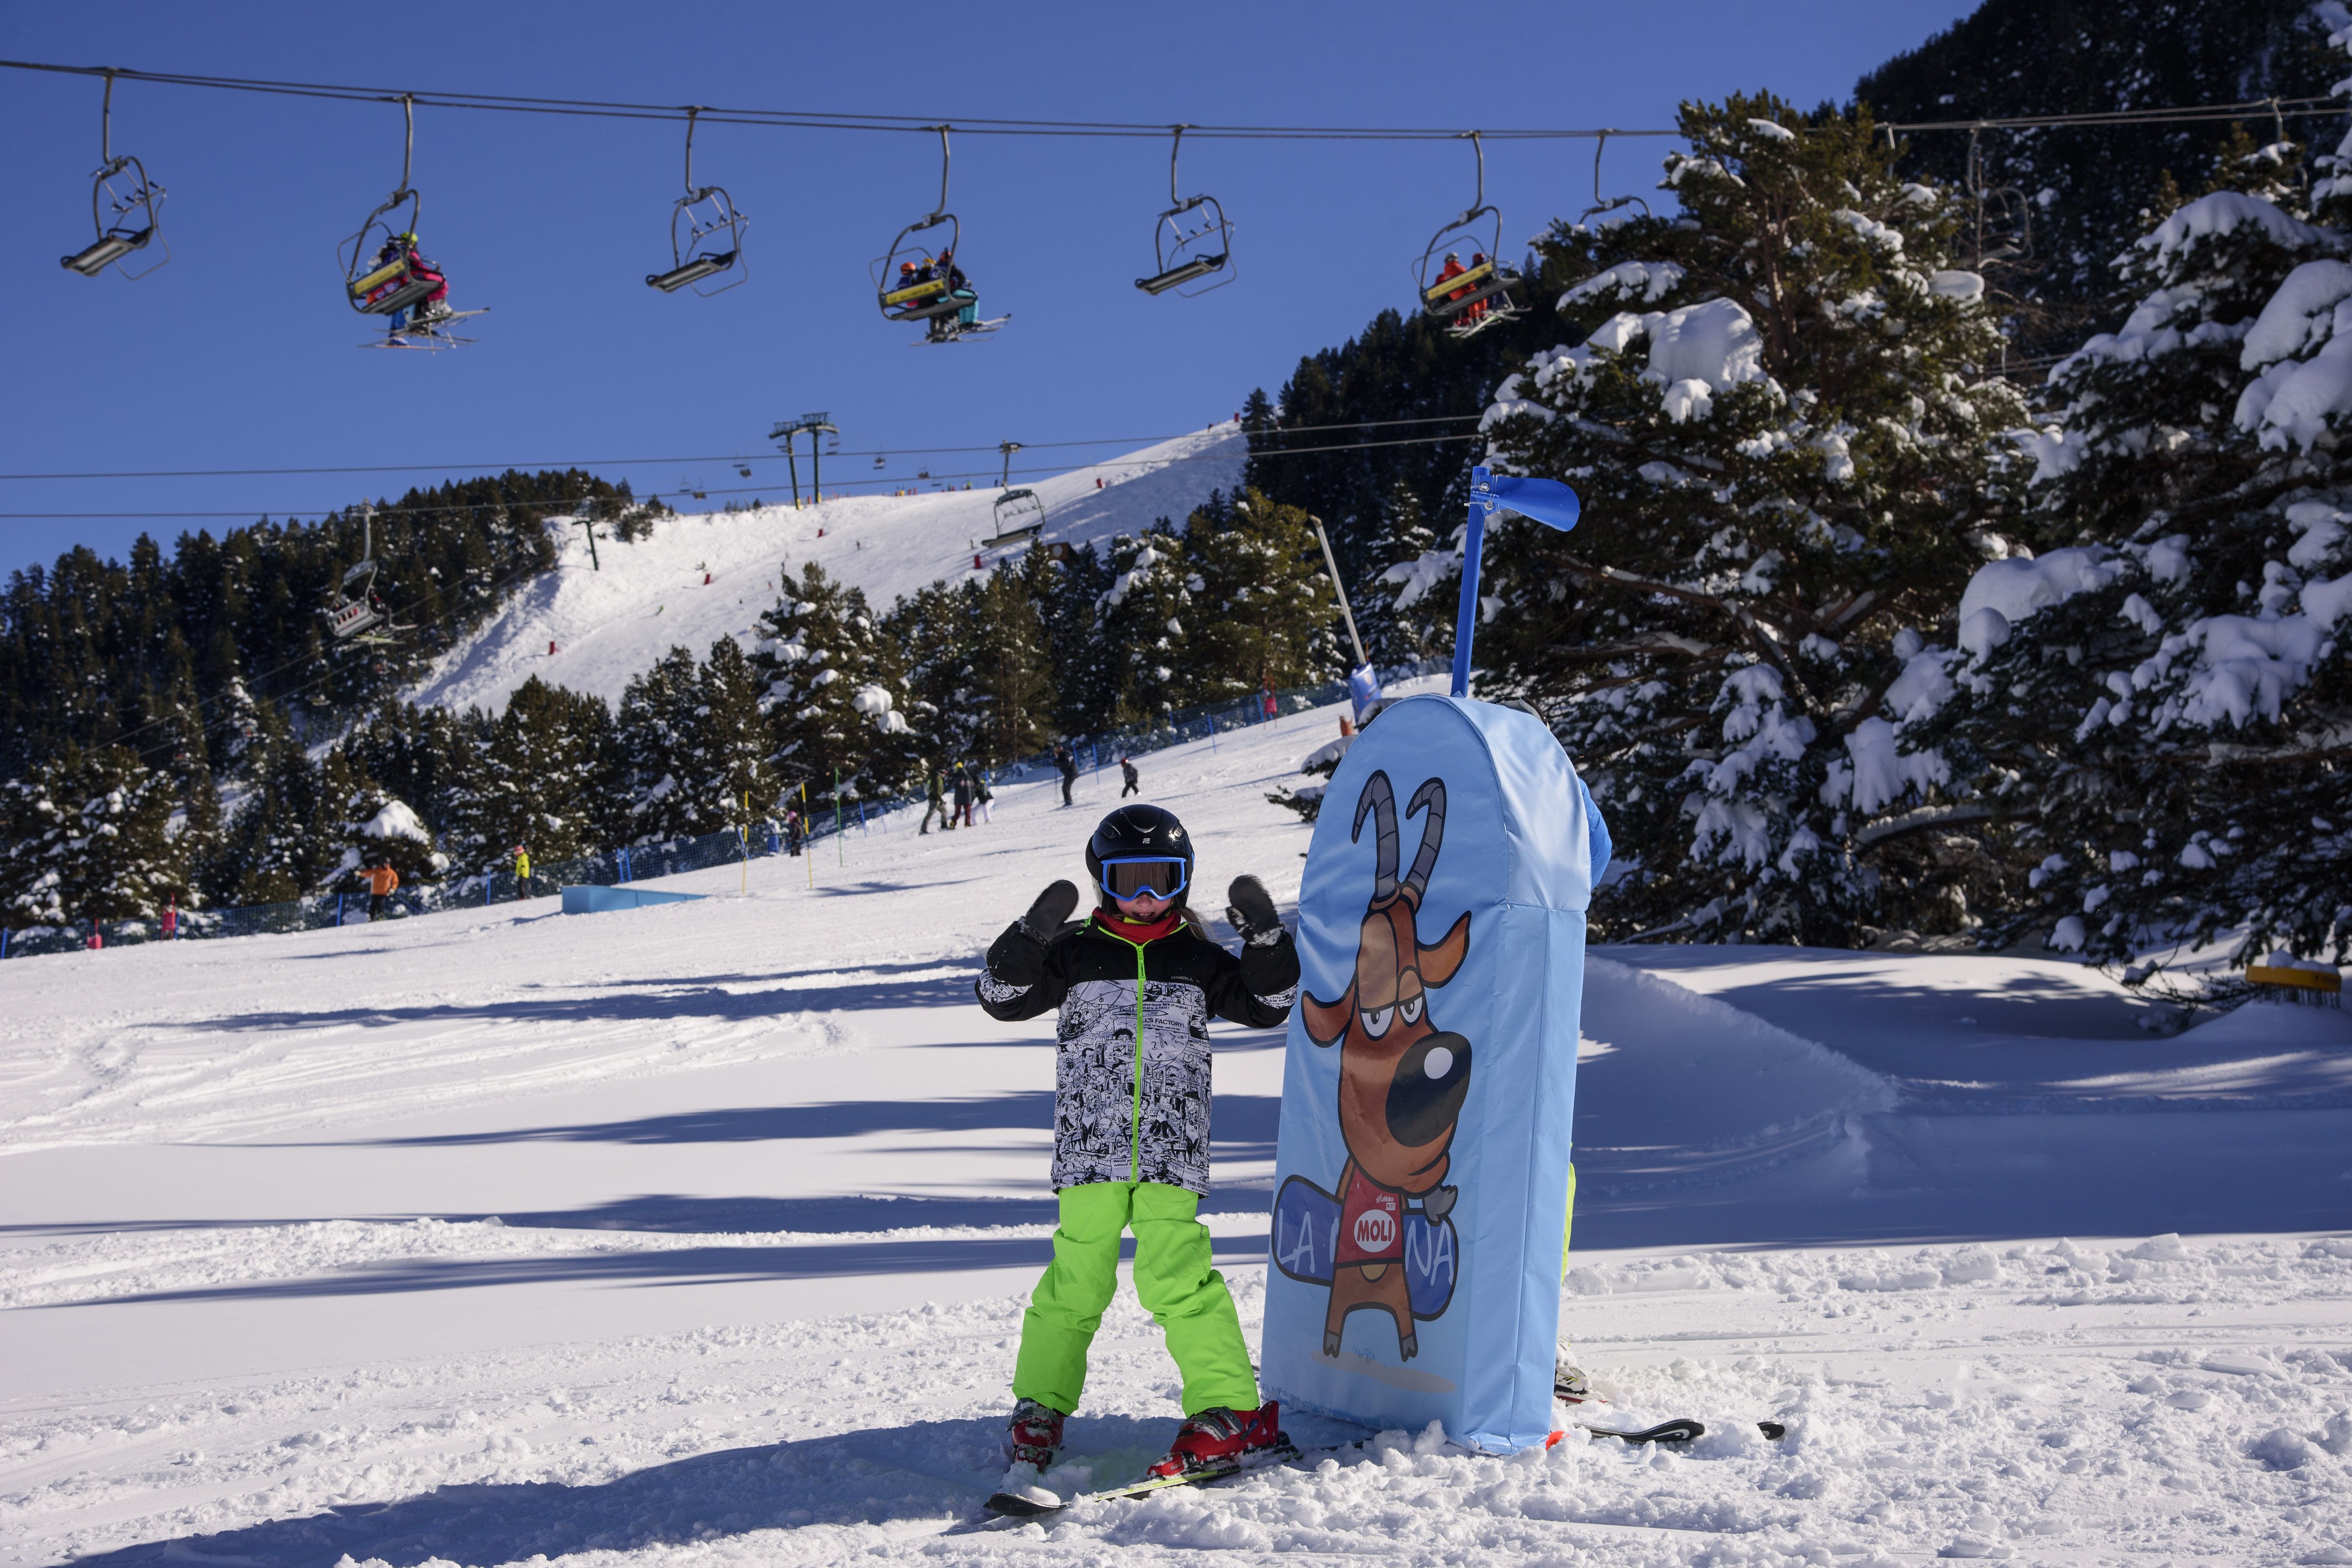 Els amants i apassionats de l’esquí podran gaudir molt de la neu per Setmana Santa